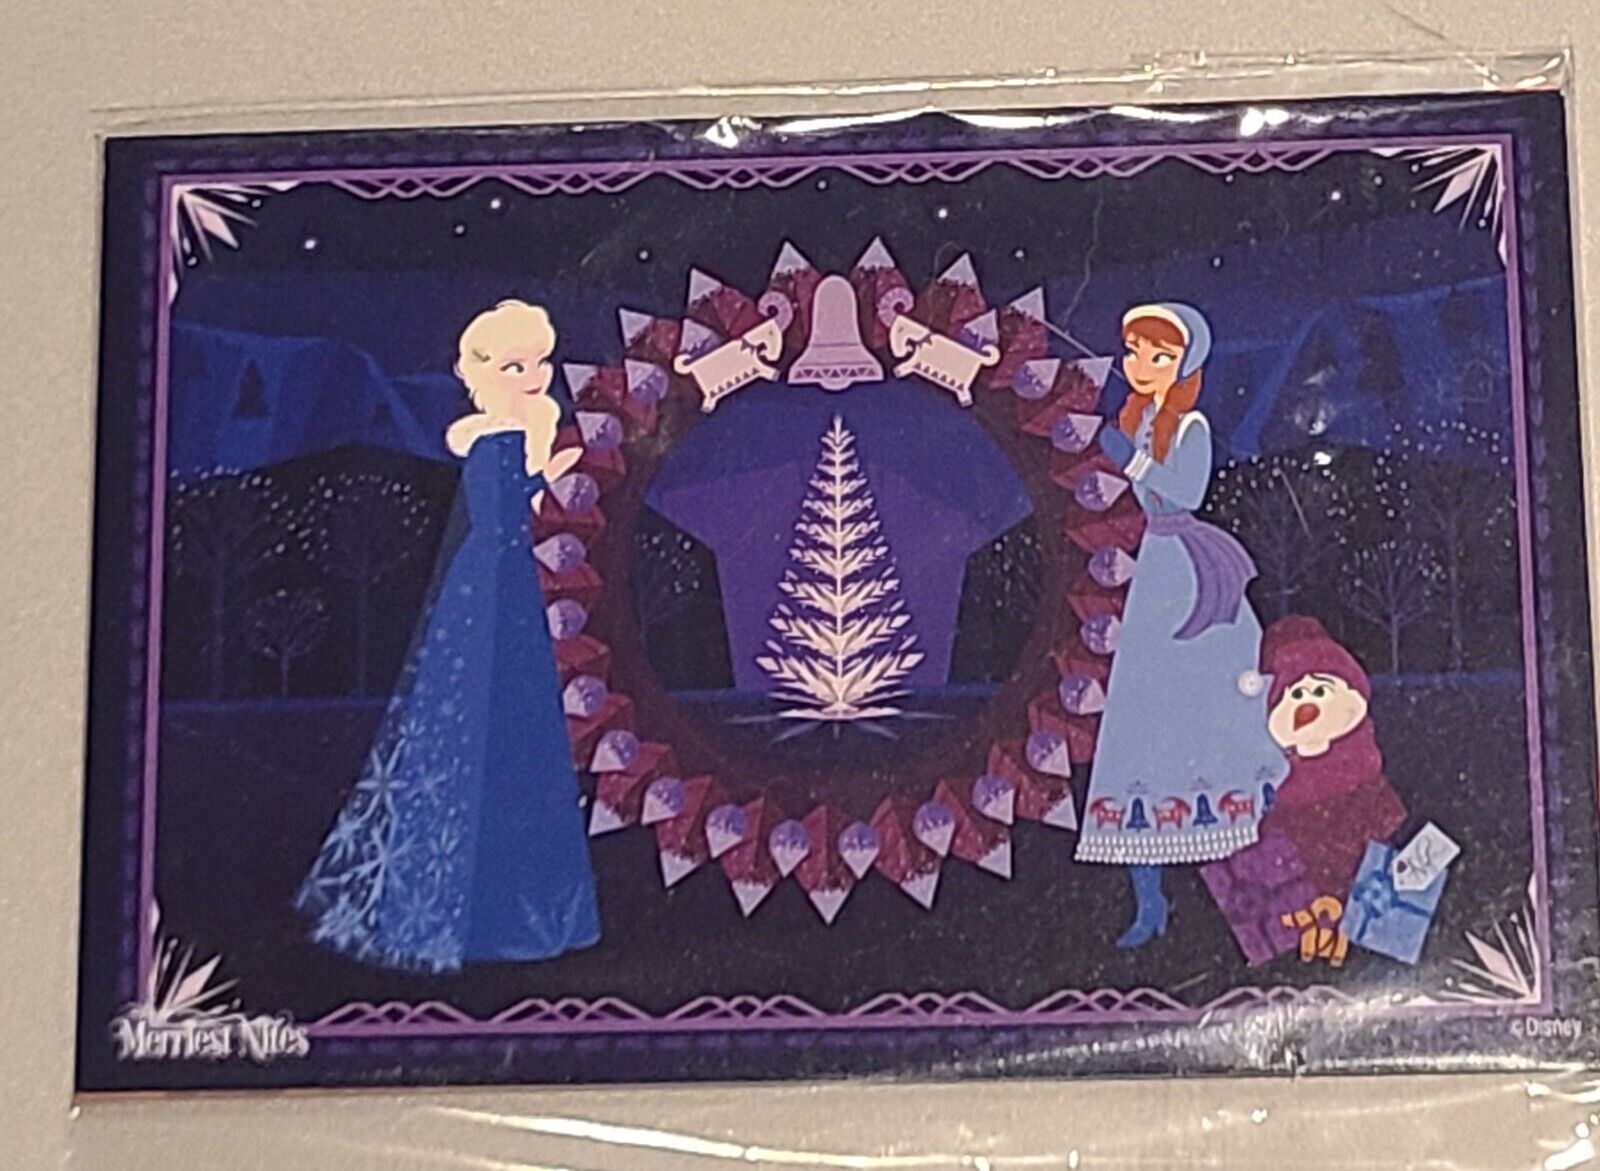 Disneyland Merriest Nights Art Prints Set of (6) 2021 Christmas Postcards Sealed